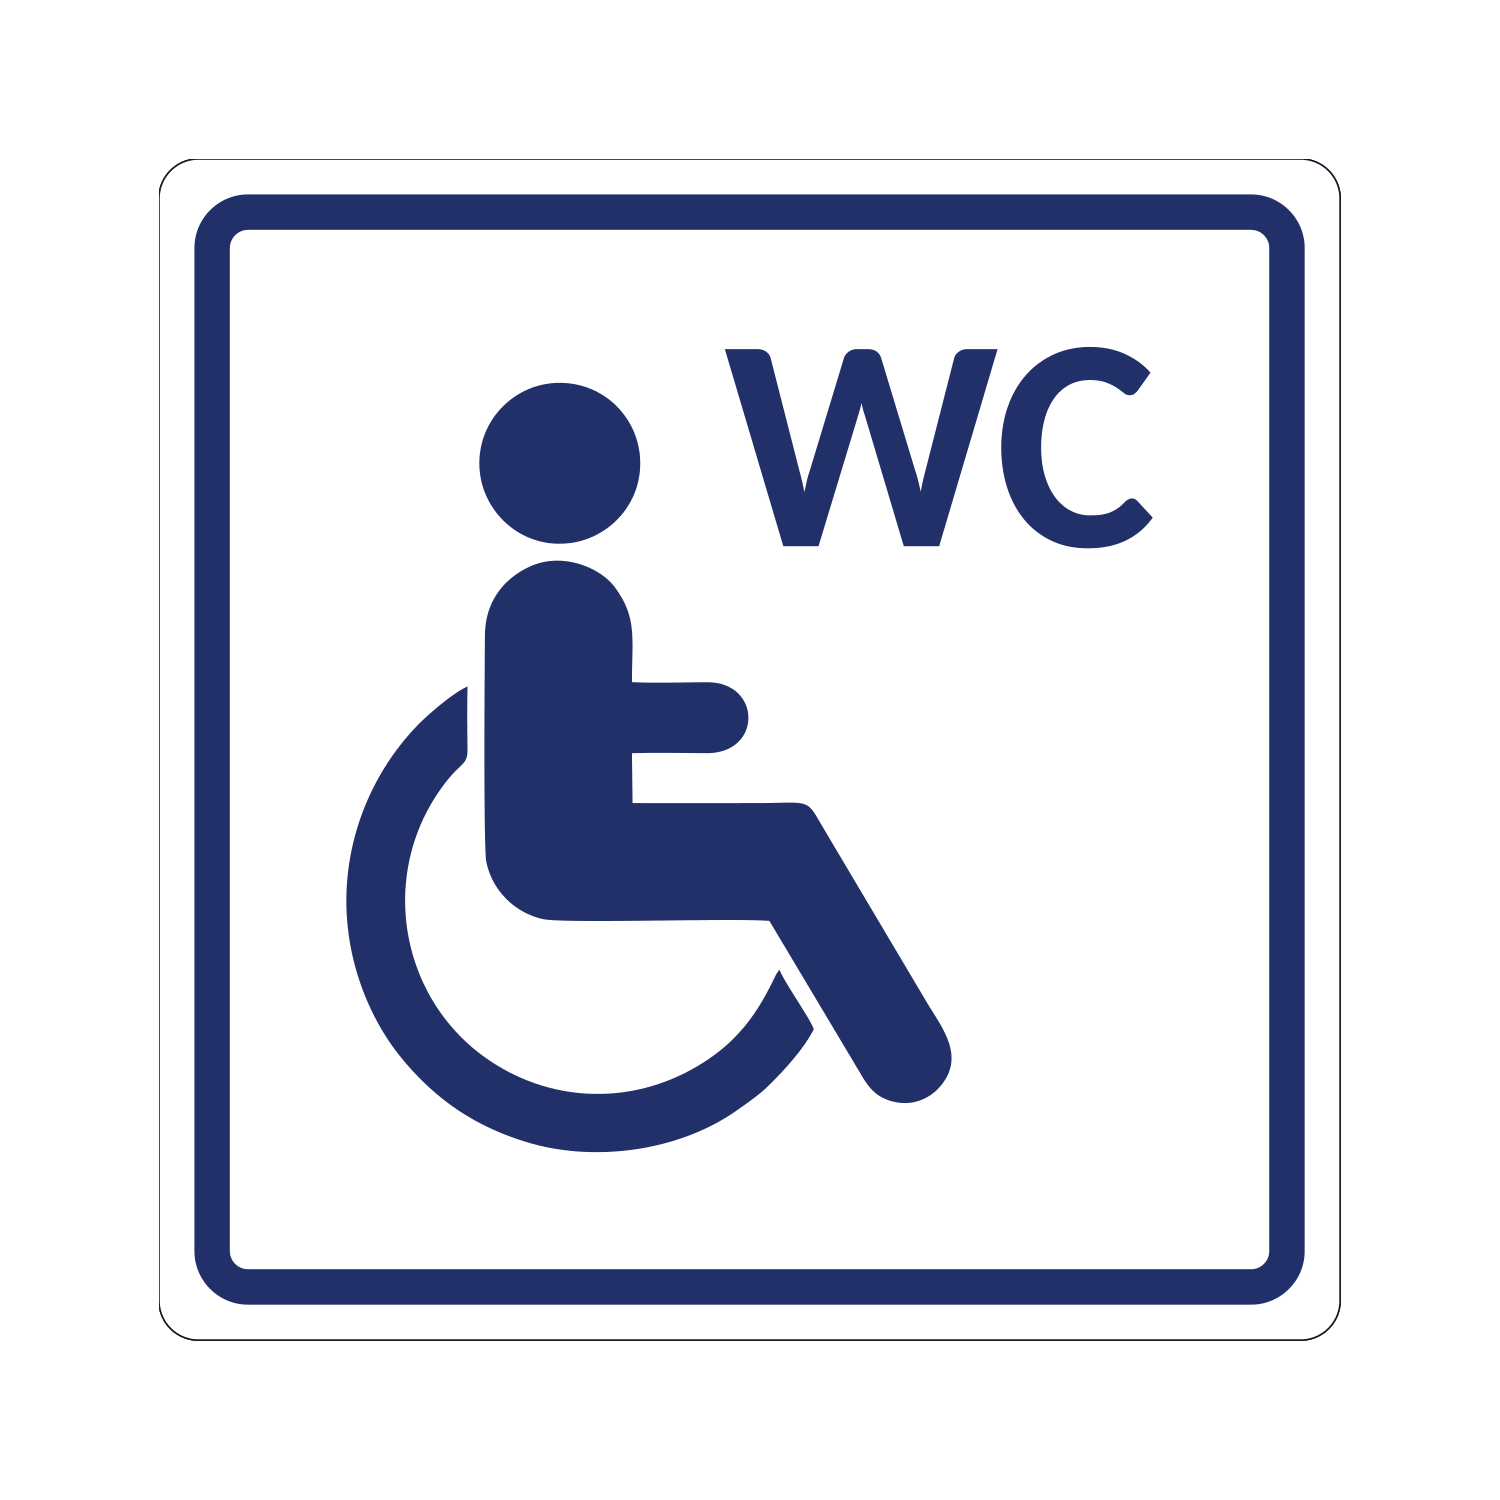 Разметку путей для пешеходов и инвалидов на креслах колясках рекомендуется делать цветом